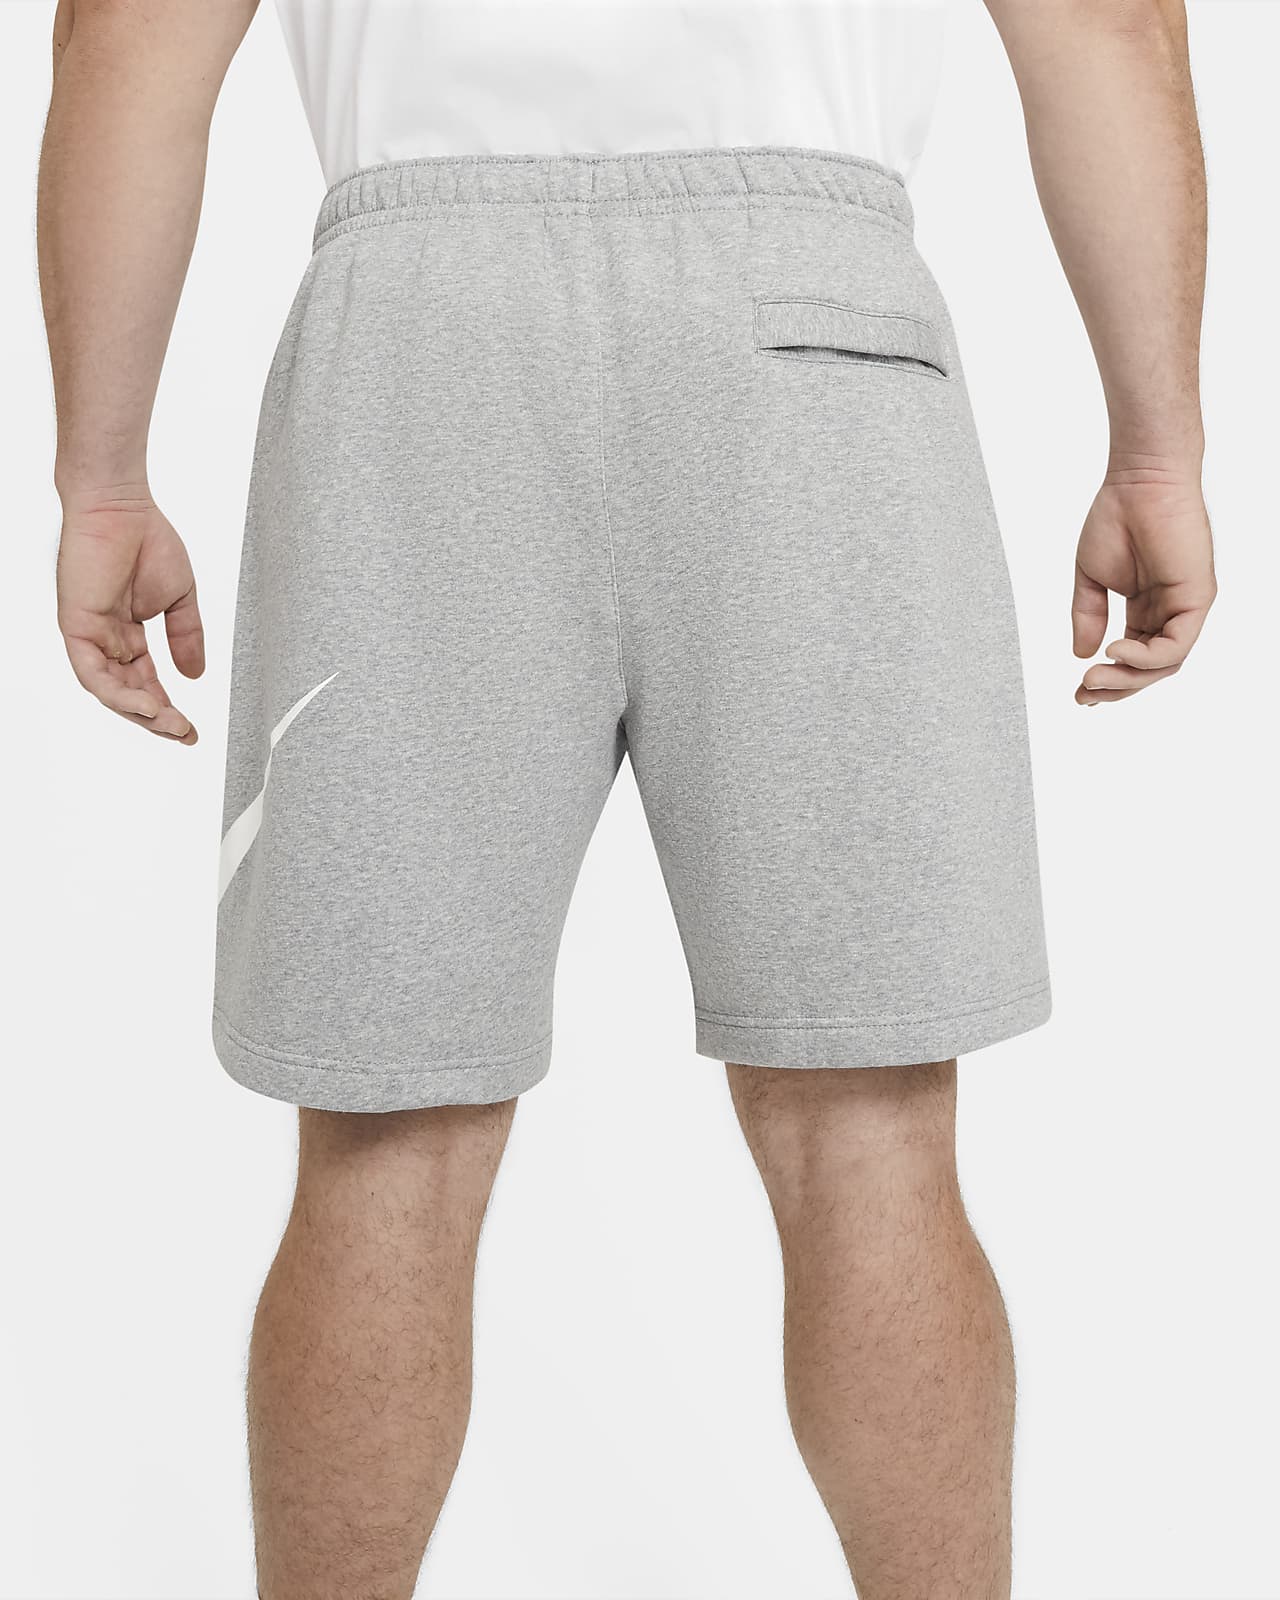 nike club grey shorts